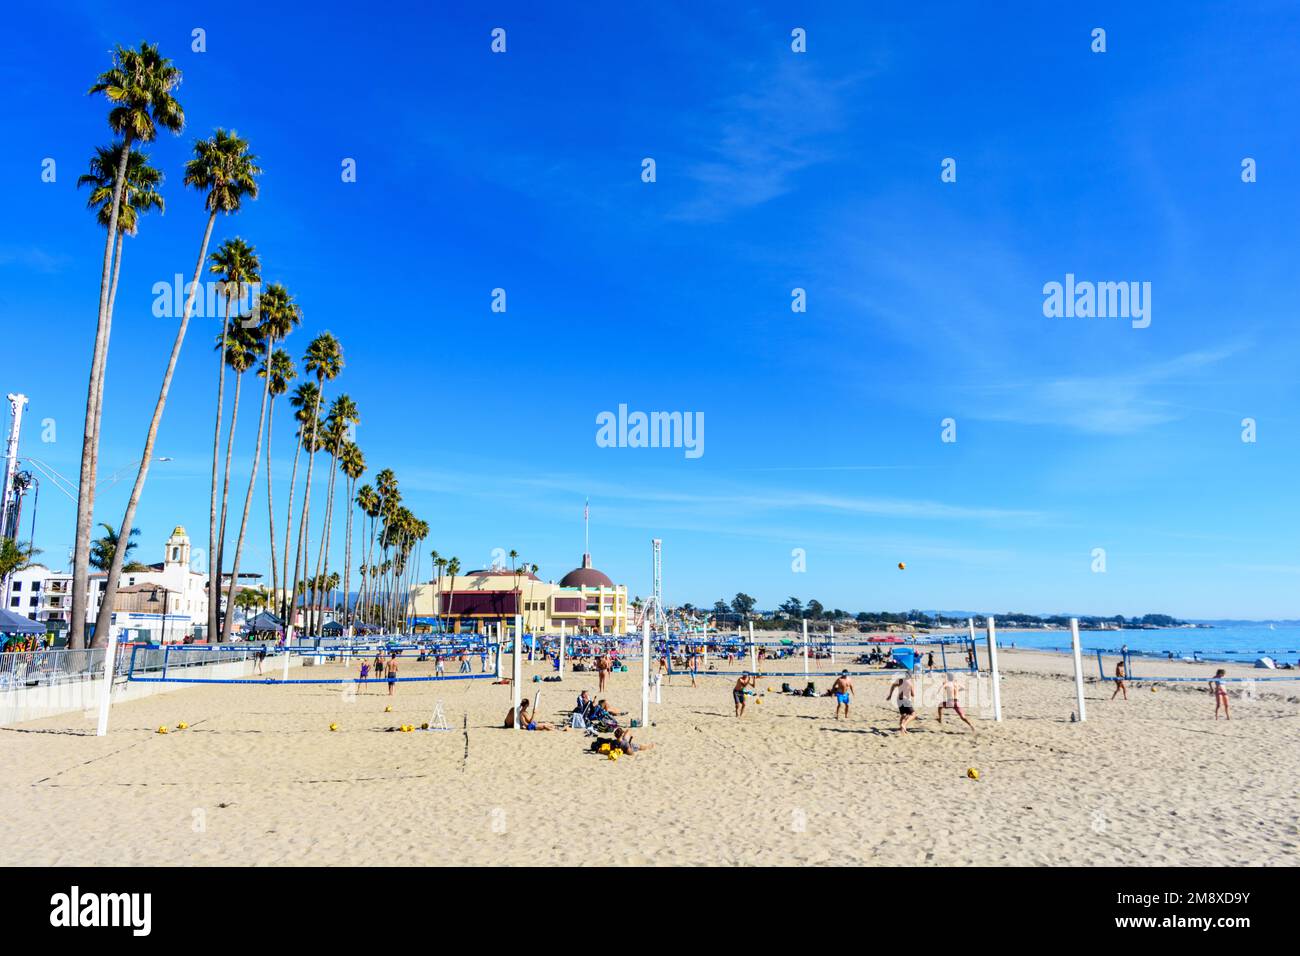 Boardwalk Beach mit Palmen in Reihe, Volleyballplätzen und Menschen. Der Santa Cruz Beach Boardwalk ist im Hintergrund - Santa Cruz, Kalifornien, USA Stockfoto